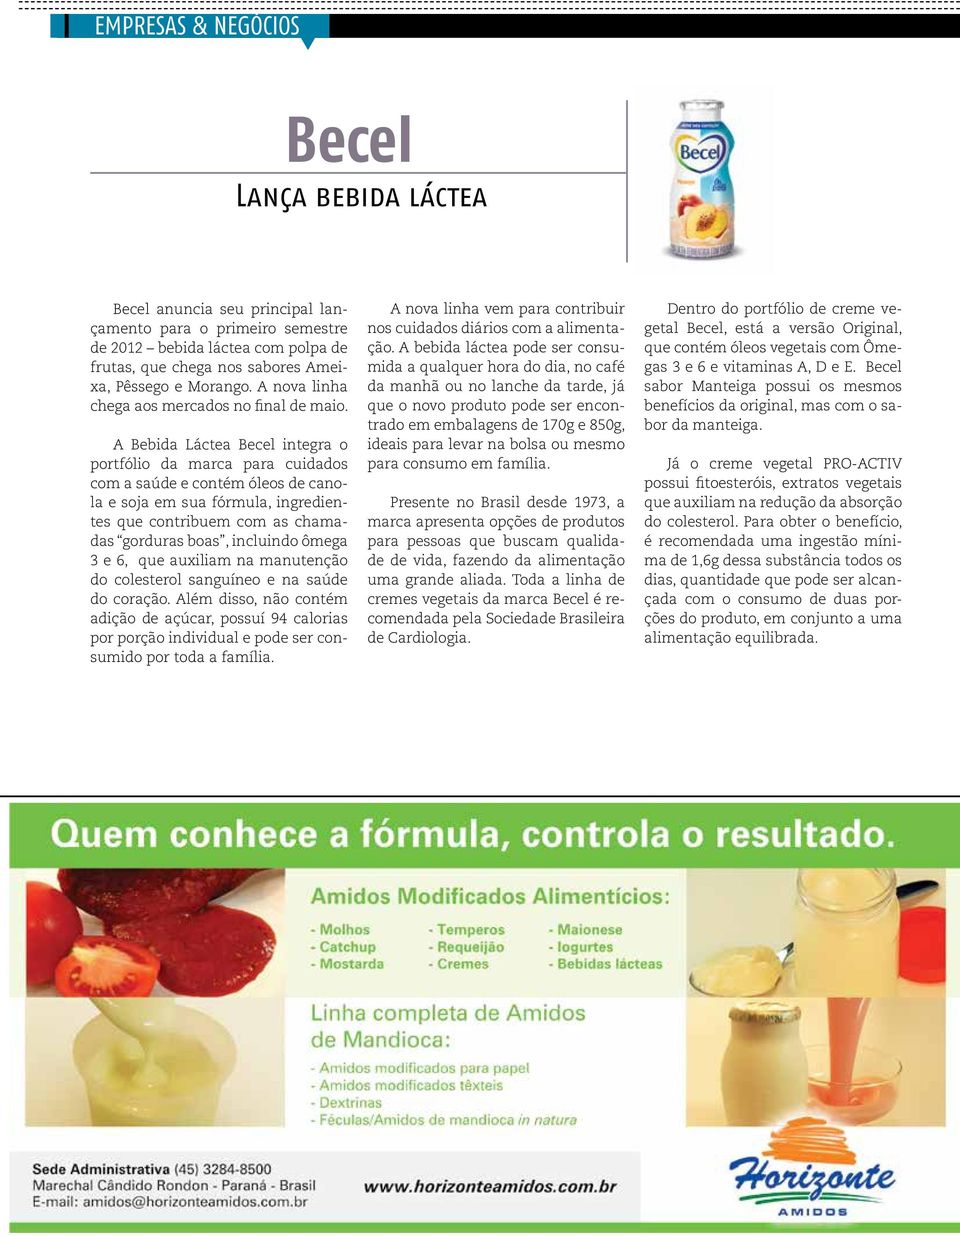 A Bebida Láctea Becel integra o portfólio da marca para cuidados com a saúde e contém óleos de canola e soja em sua fórmula, ingredientes que contribuem com as chamadas gorduras boas, incluindo ômega